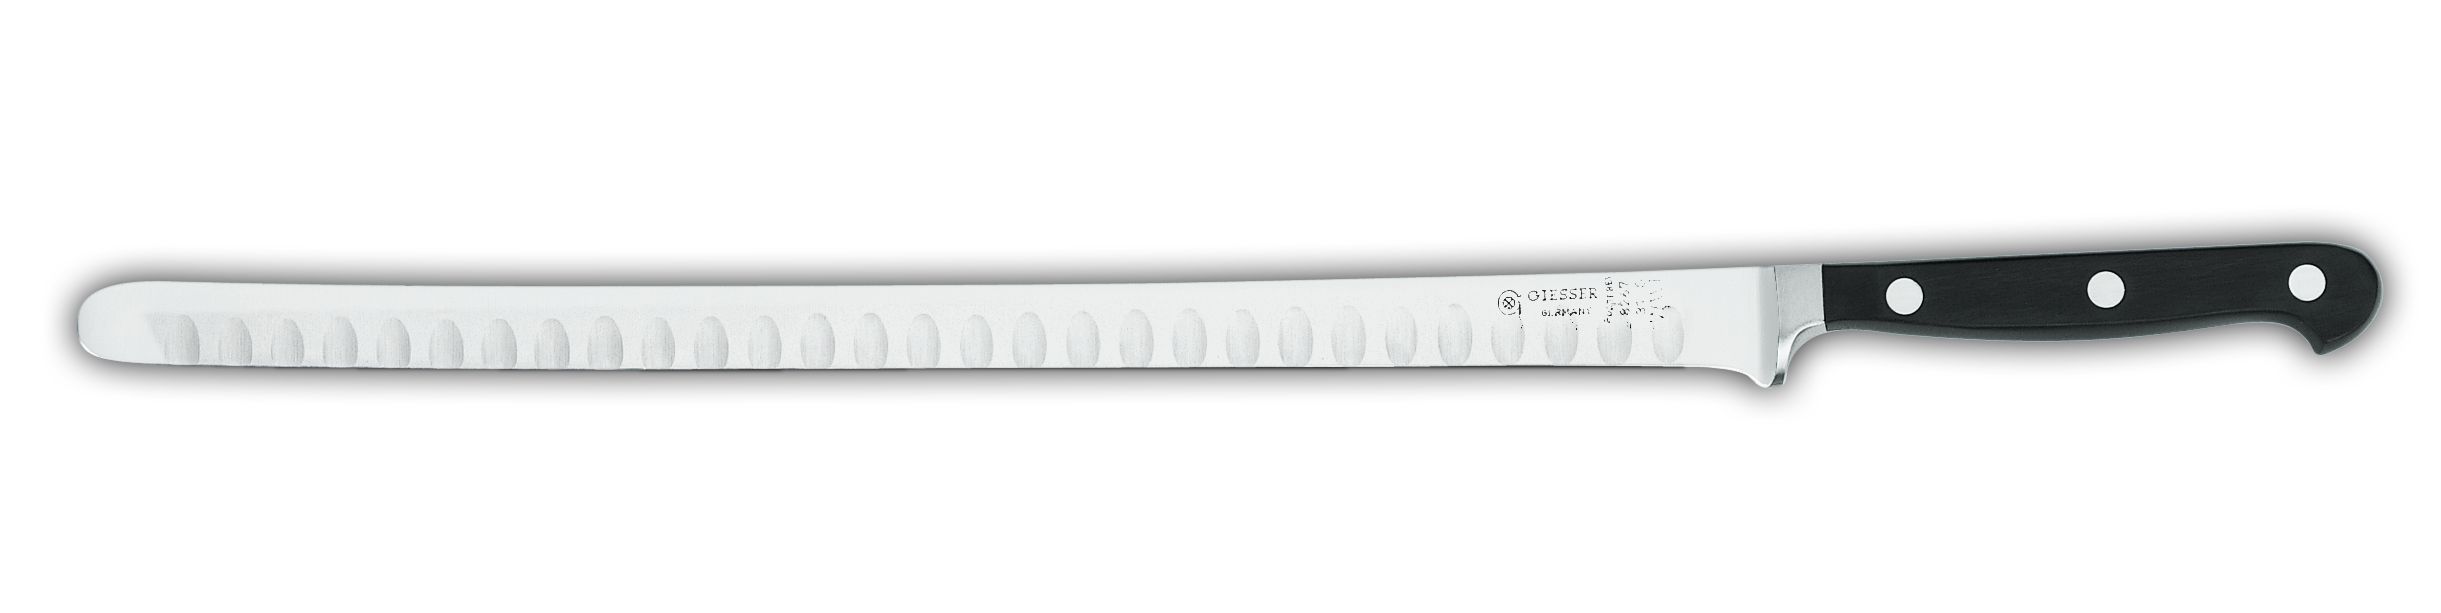 Нож для разделки лосося 8267 ww  лезвие с желобками, 31 см,  черная рукоятка